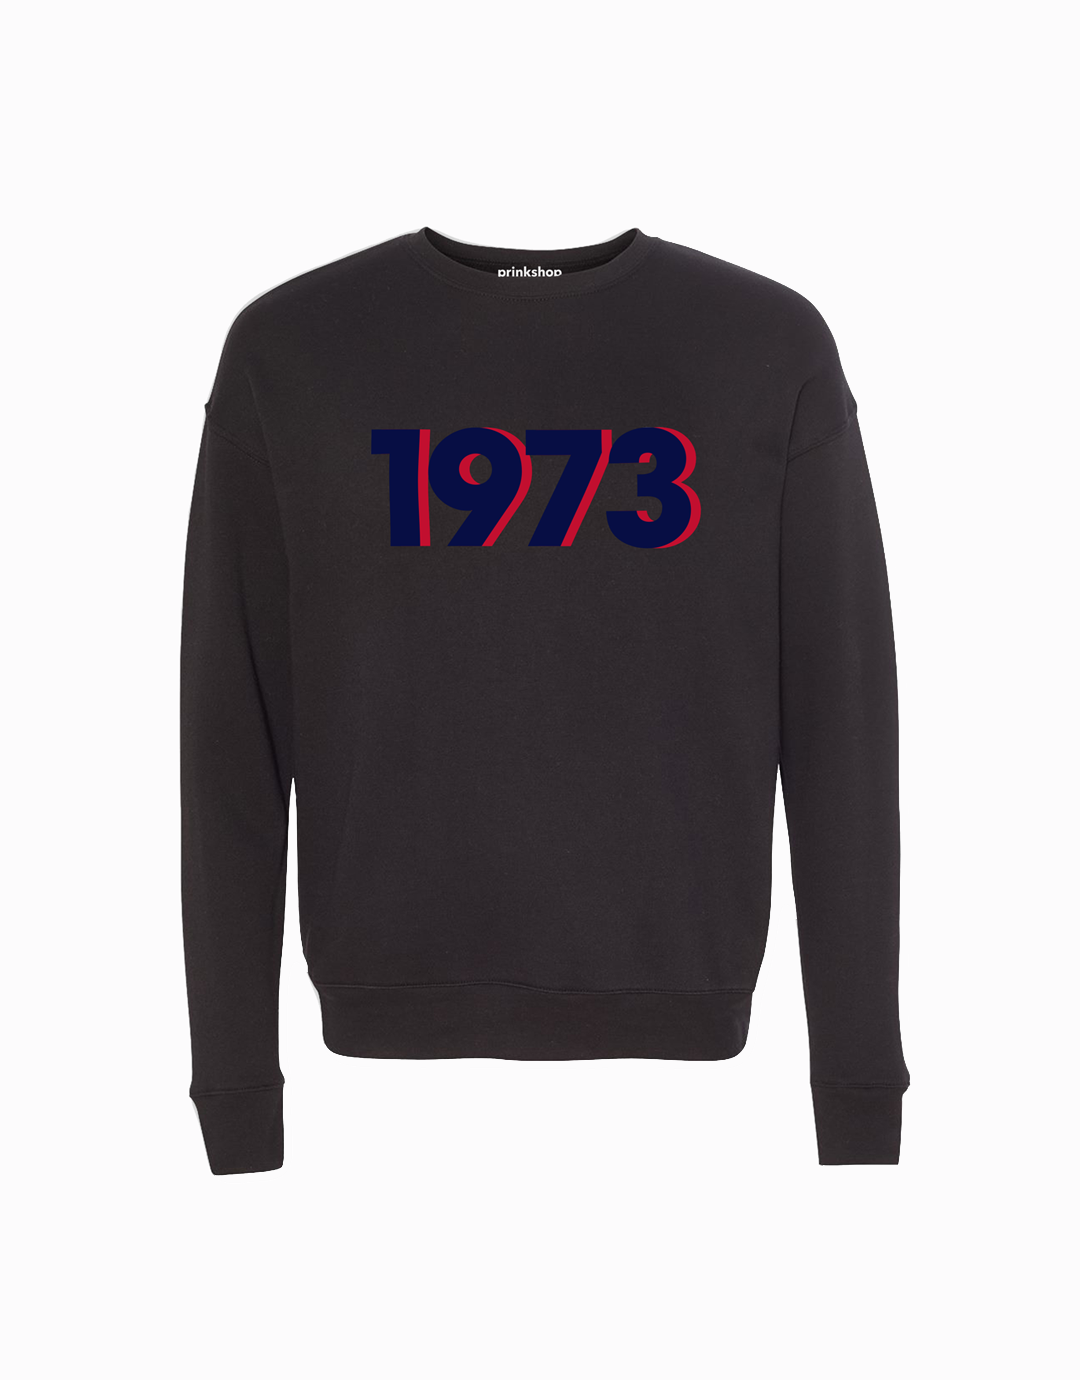 1973 Retro Sweatshirt - Black